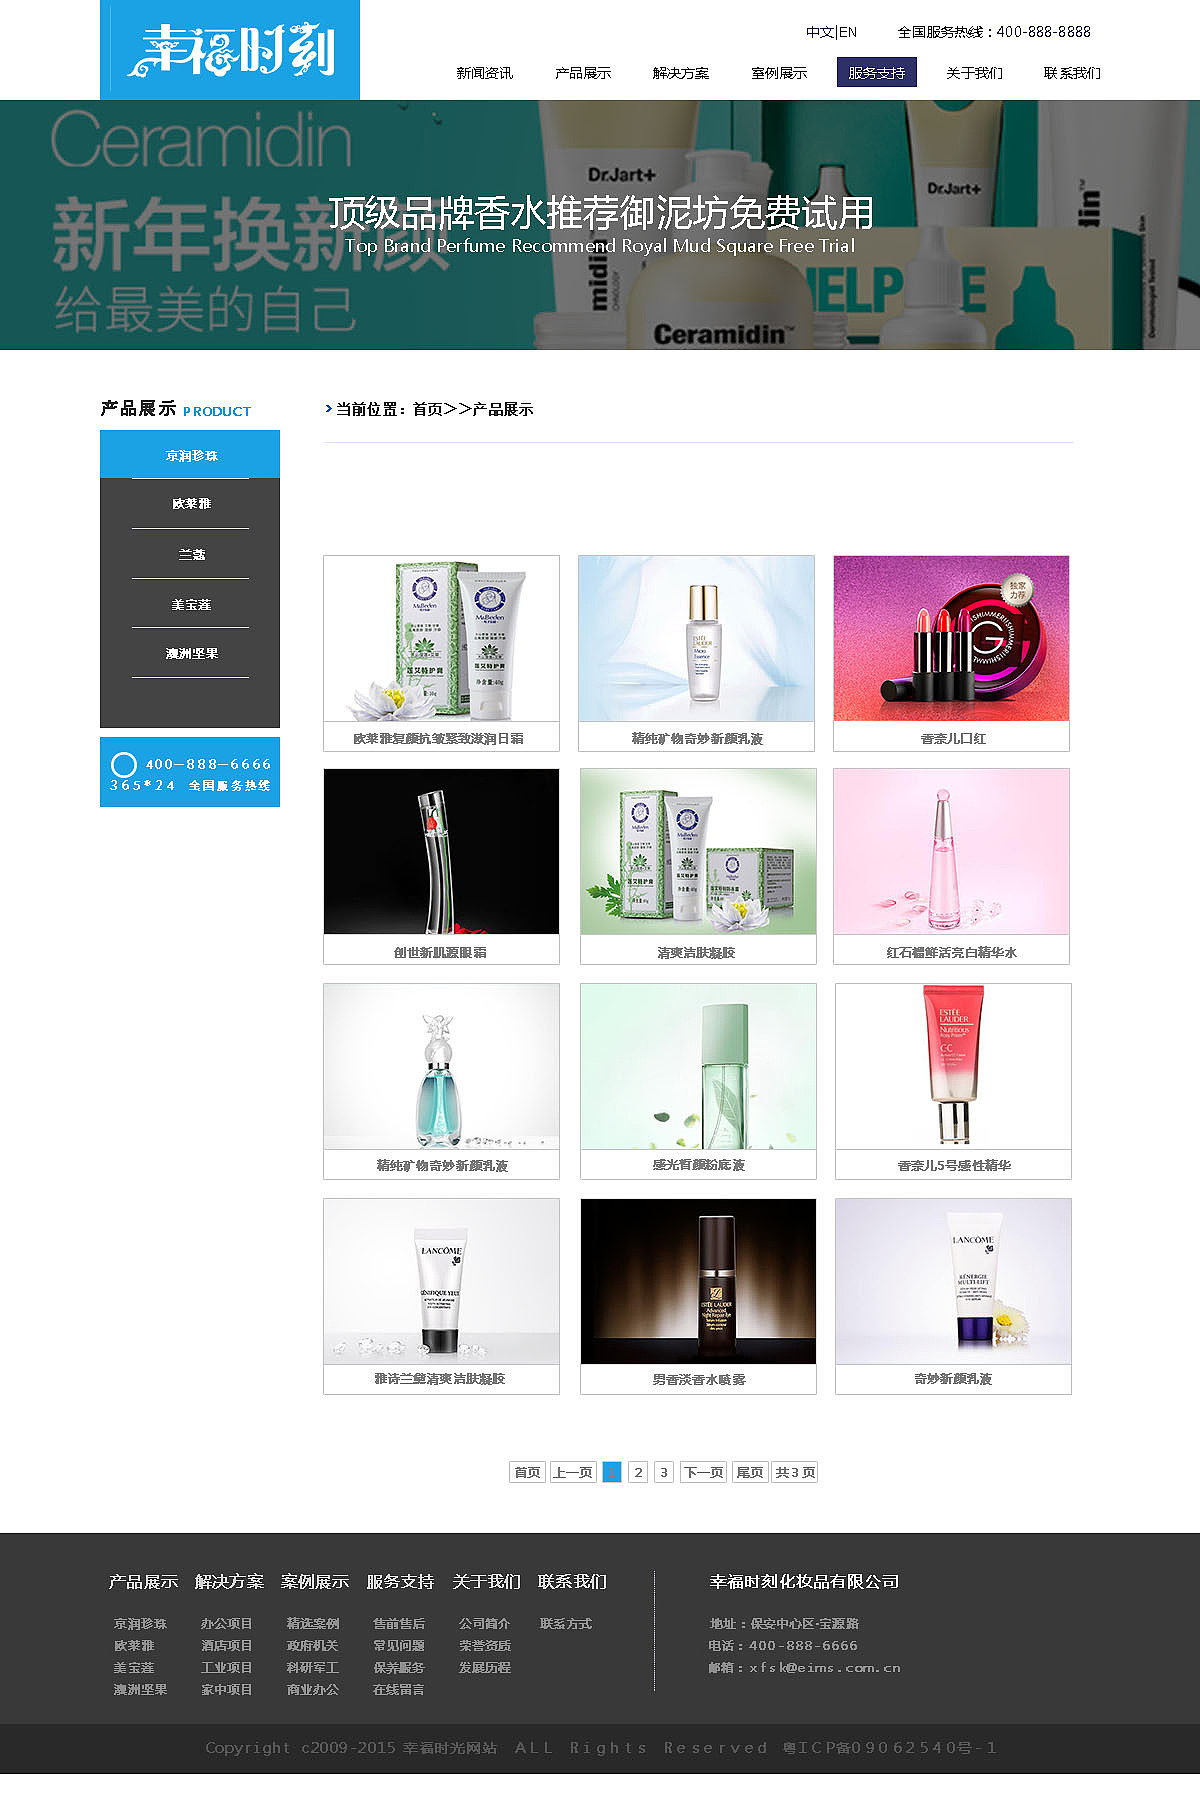 企业站网页设计,简单大方的布局,带来全新